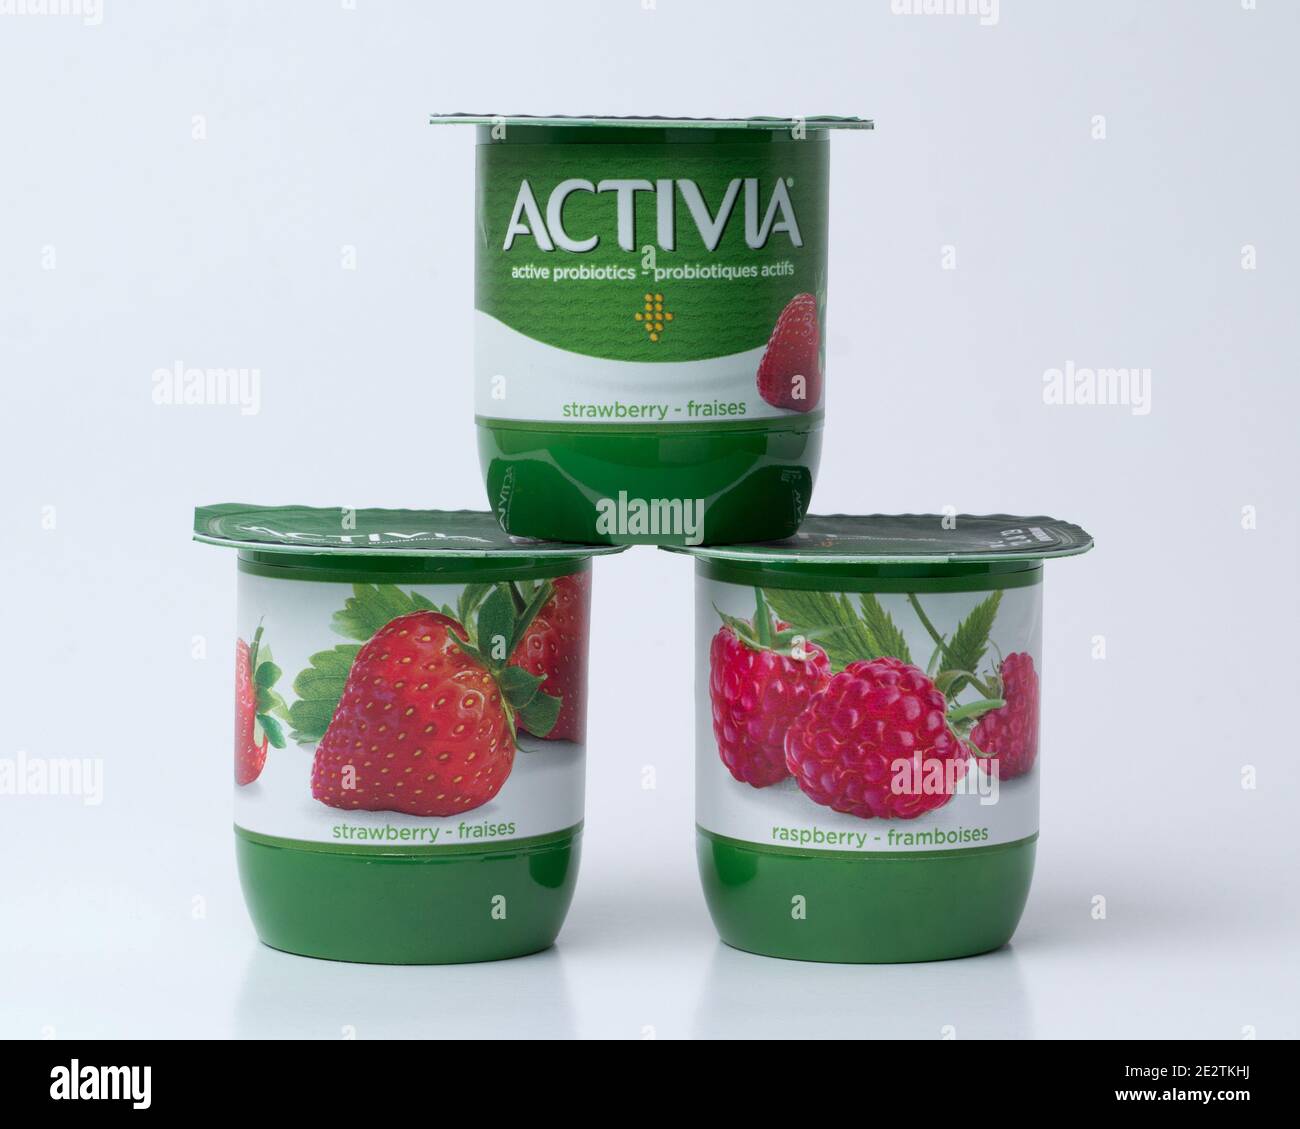 Pleasant Valley, Kanada - 14. Januar 2021: Activia Joghurt-Töpfe auf neutralem Hintergrund. Activia ist eine Joghurtmarke, die sich im Besitz der Groupe Danon befindet Stockfoto